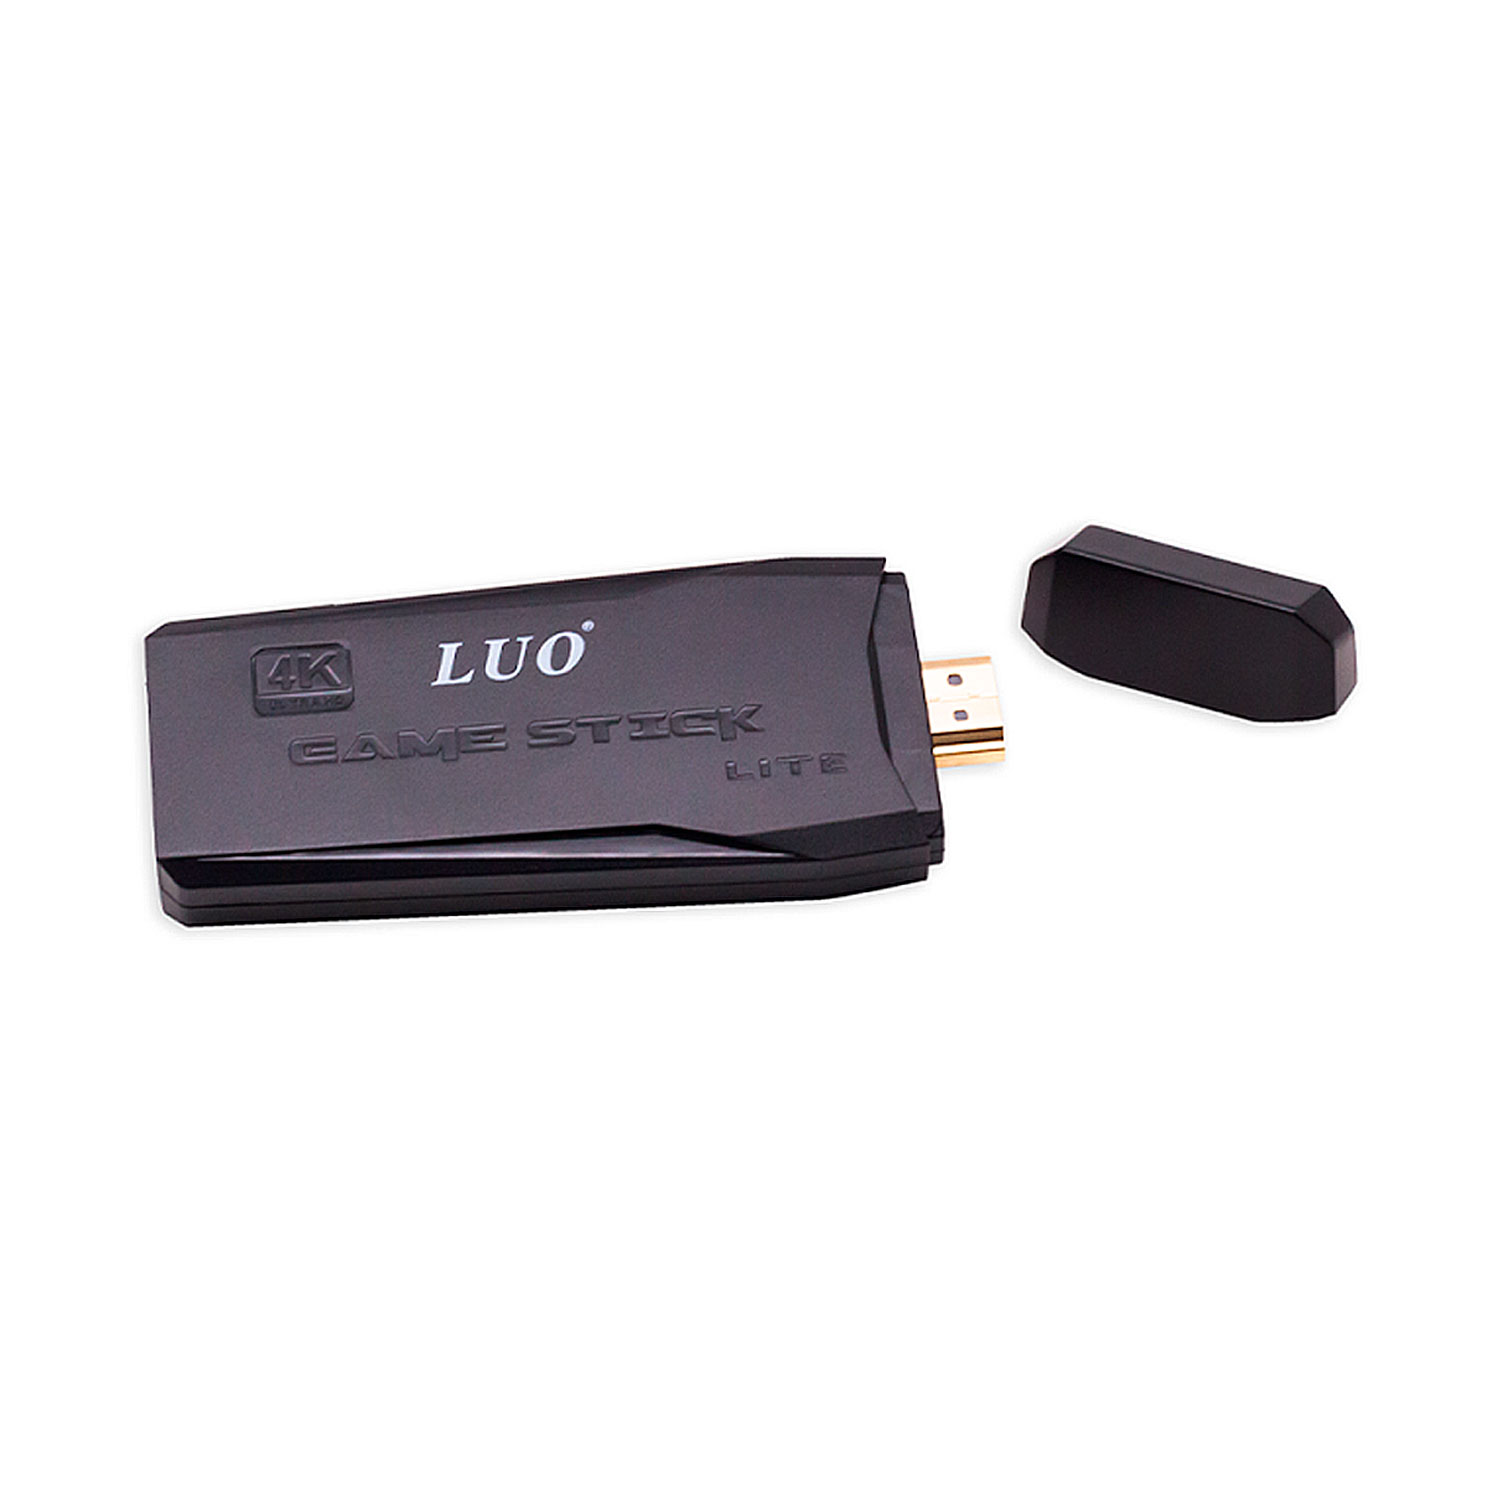 Console Luo Lite Game Stick 1000 Jogos 4K UHD 2 Controles Sem Fio - Preto (Sem Garantia)